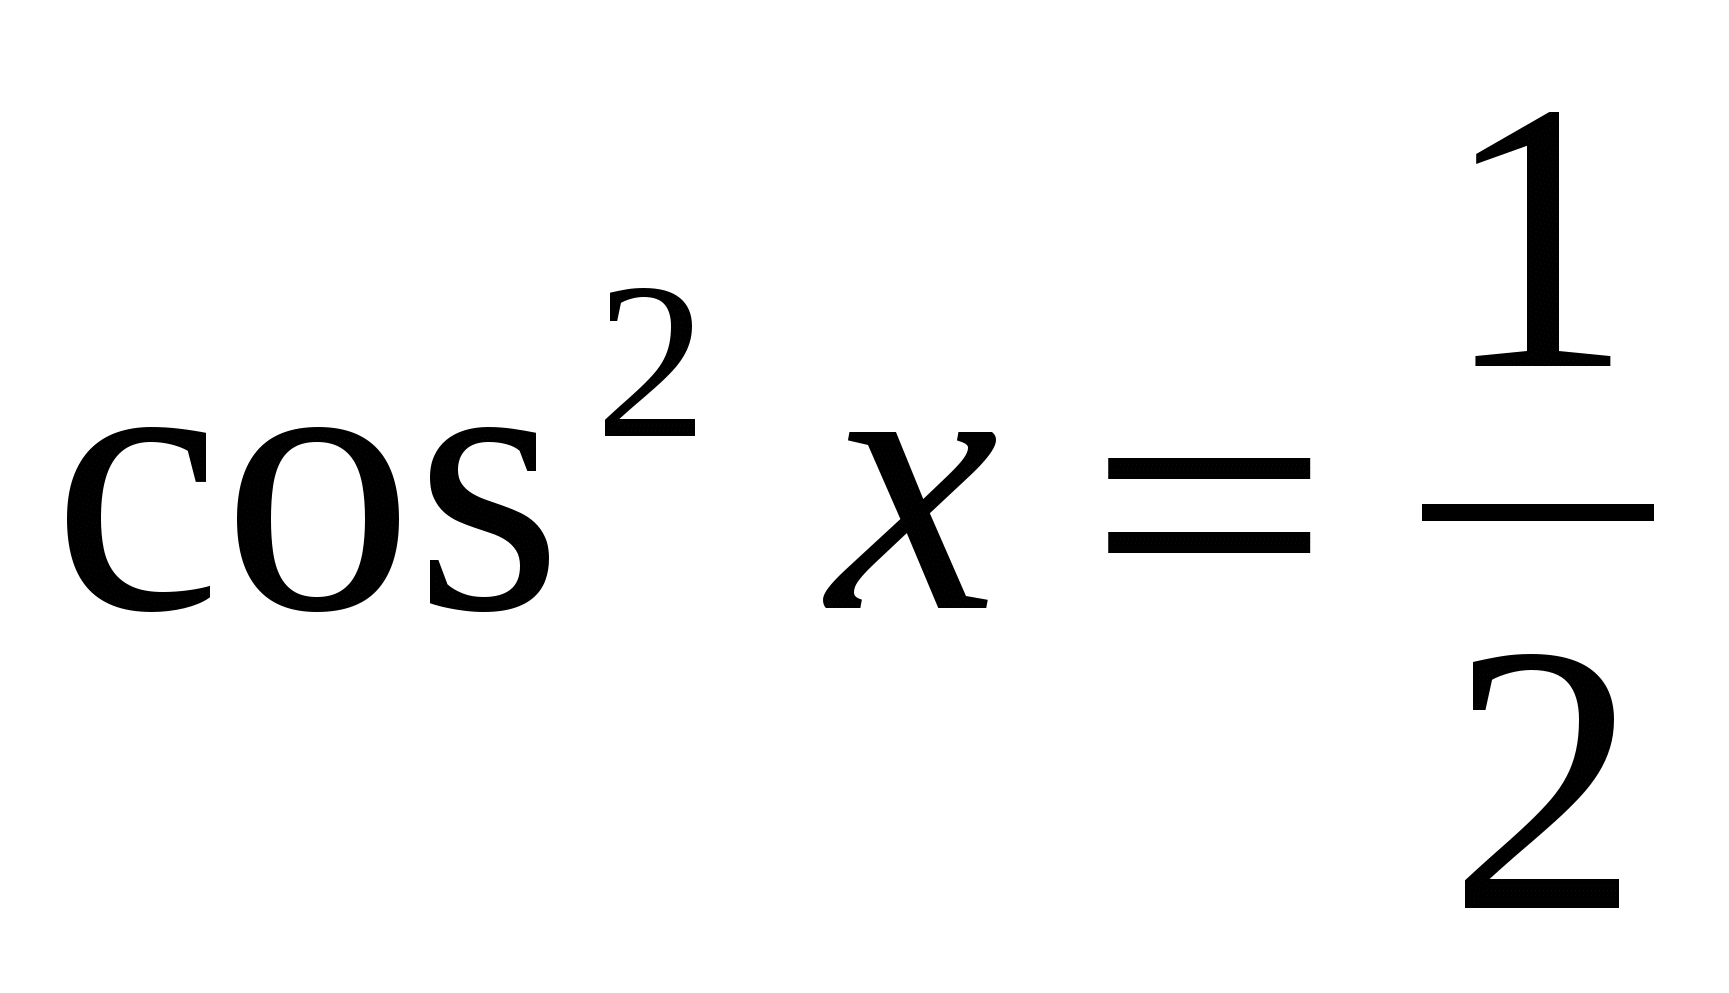 Cos2 x 1 1 0. 1-Cos2x. Cos2x=1/2. 2соs2x+1. 2cos^2-1.